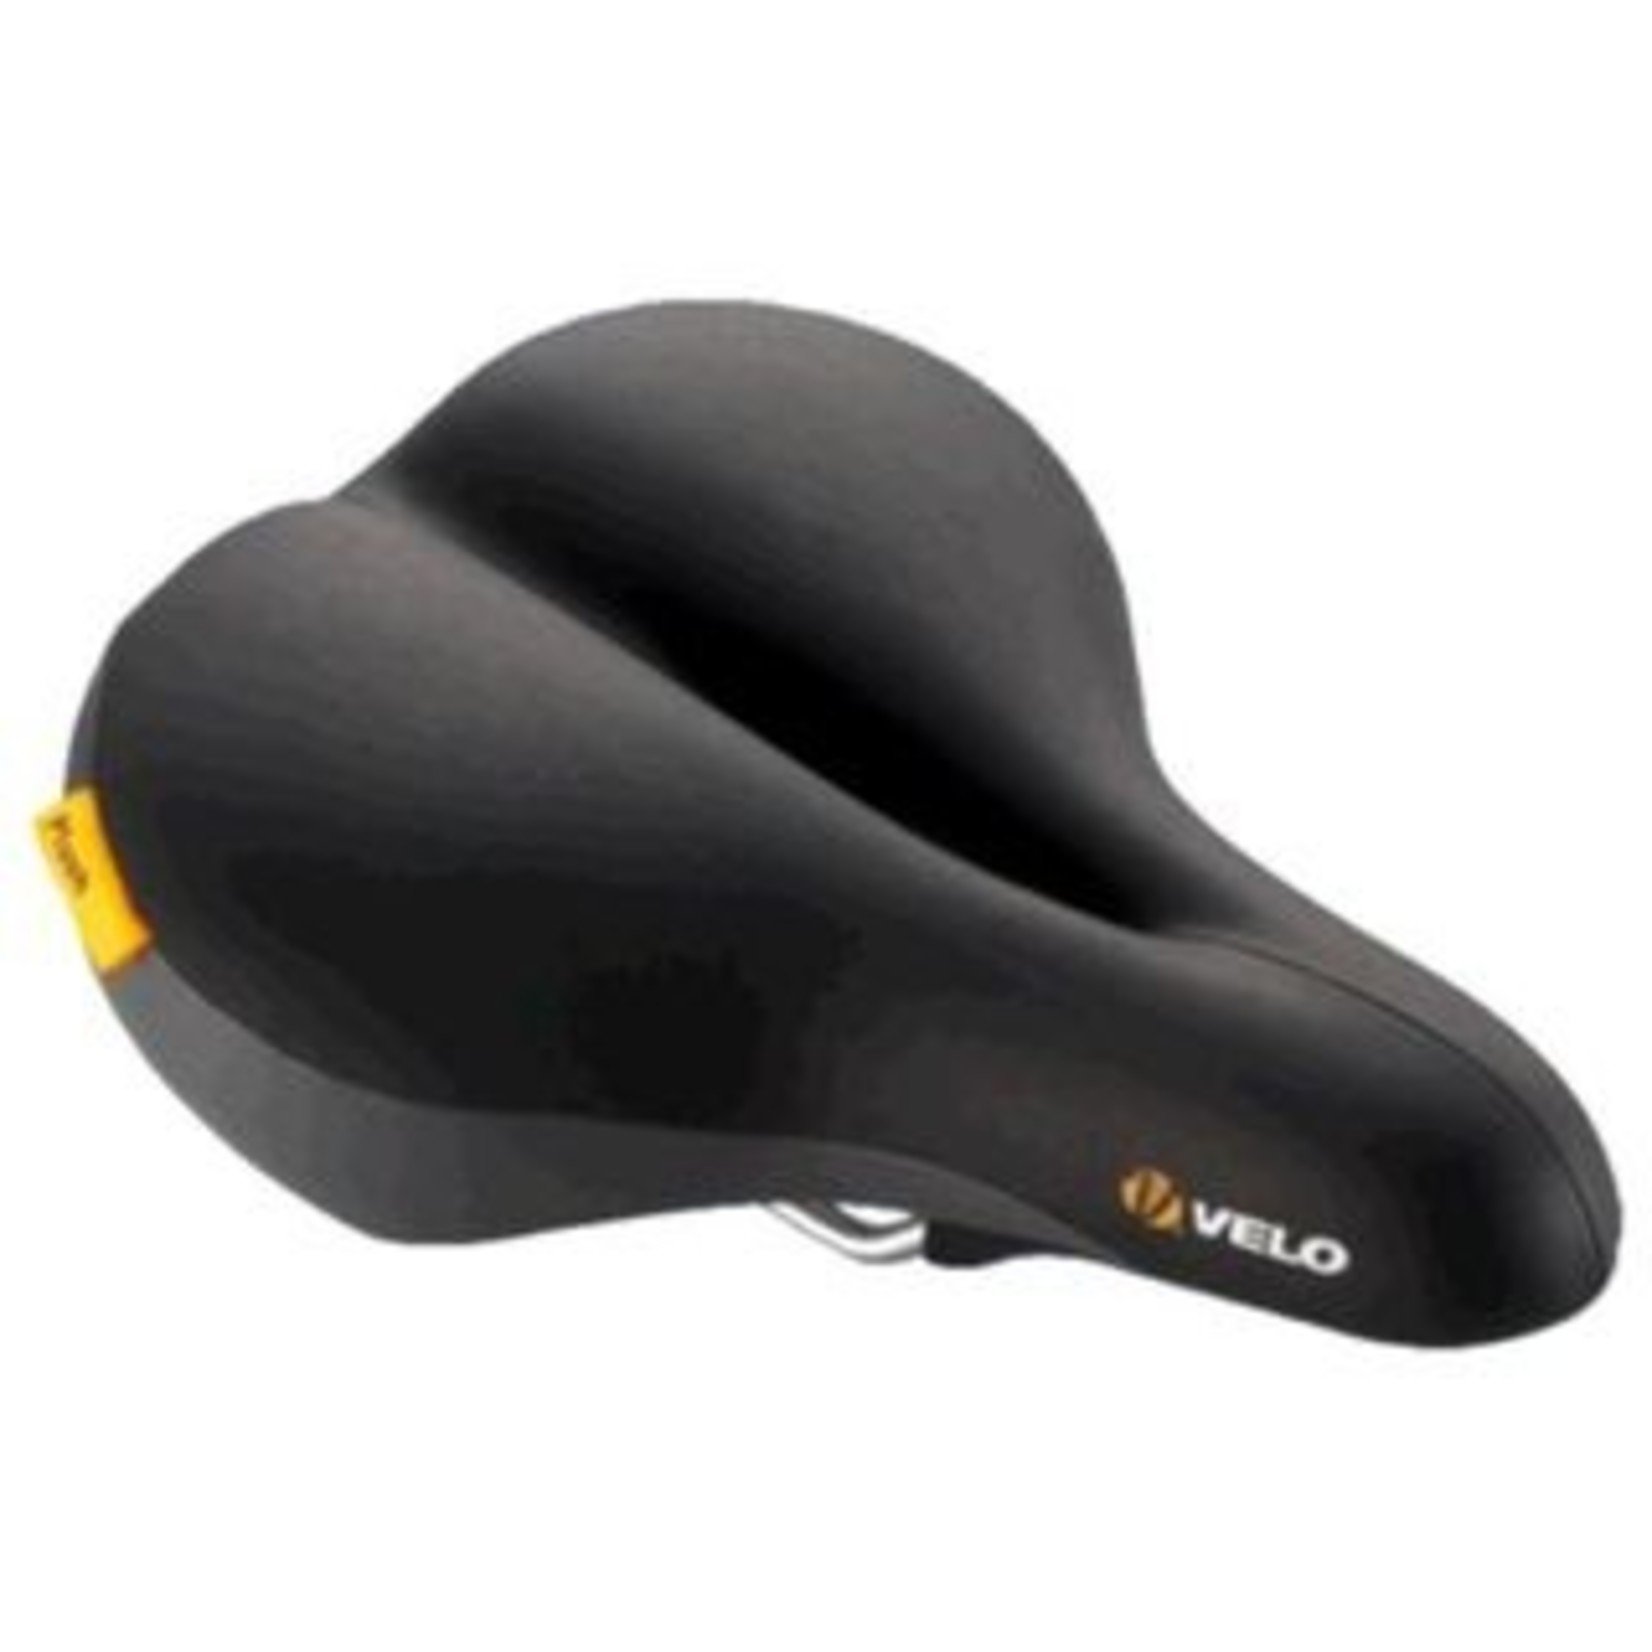 Velo Velo - Bike/Cycling Saddle - Plush Phat O - 272 x 213mm - Black